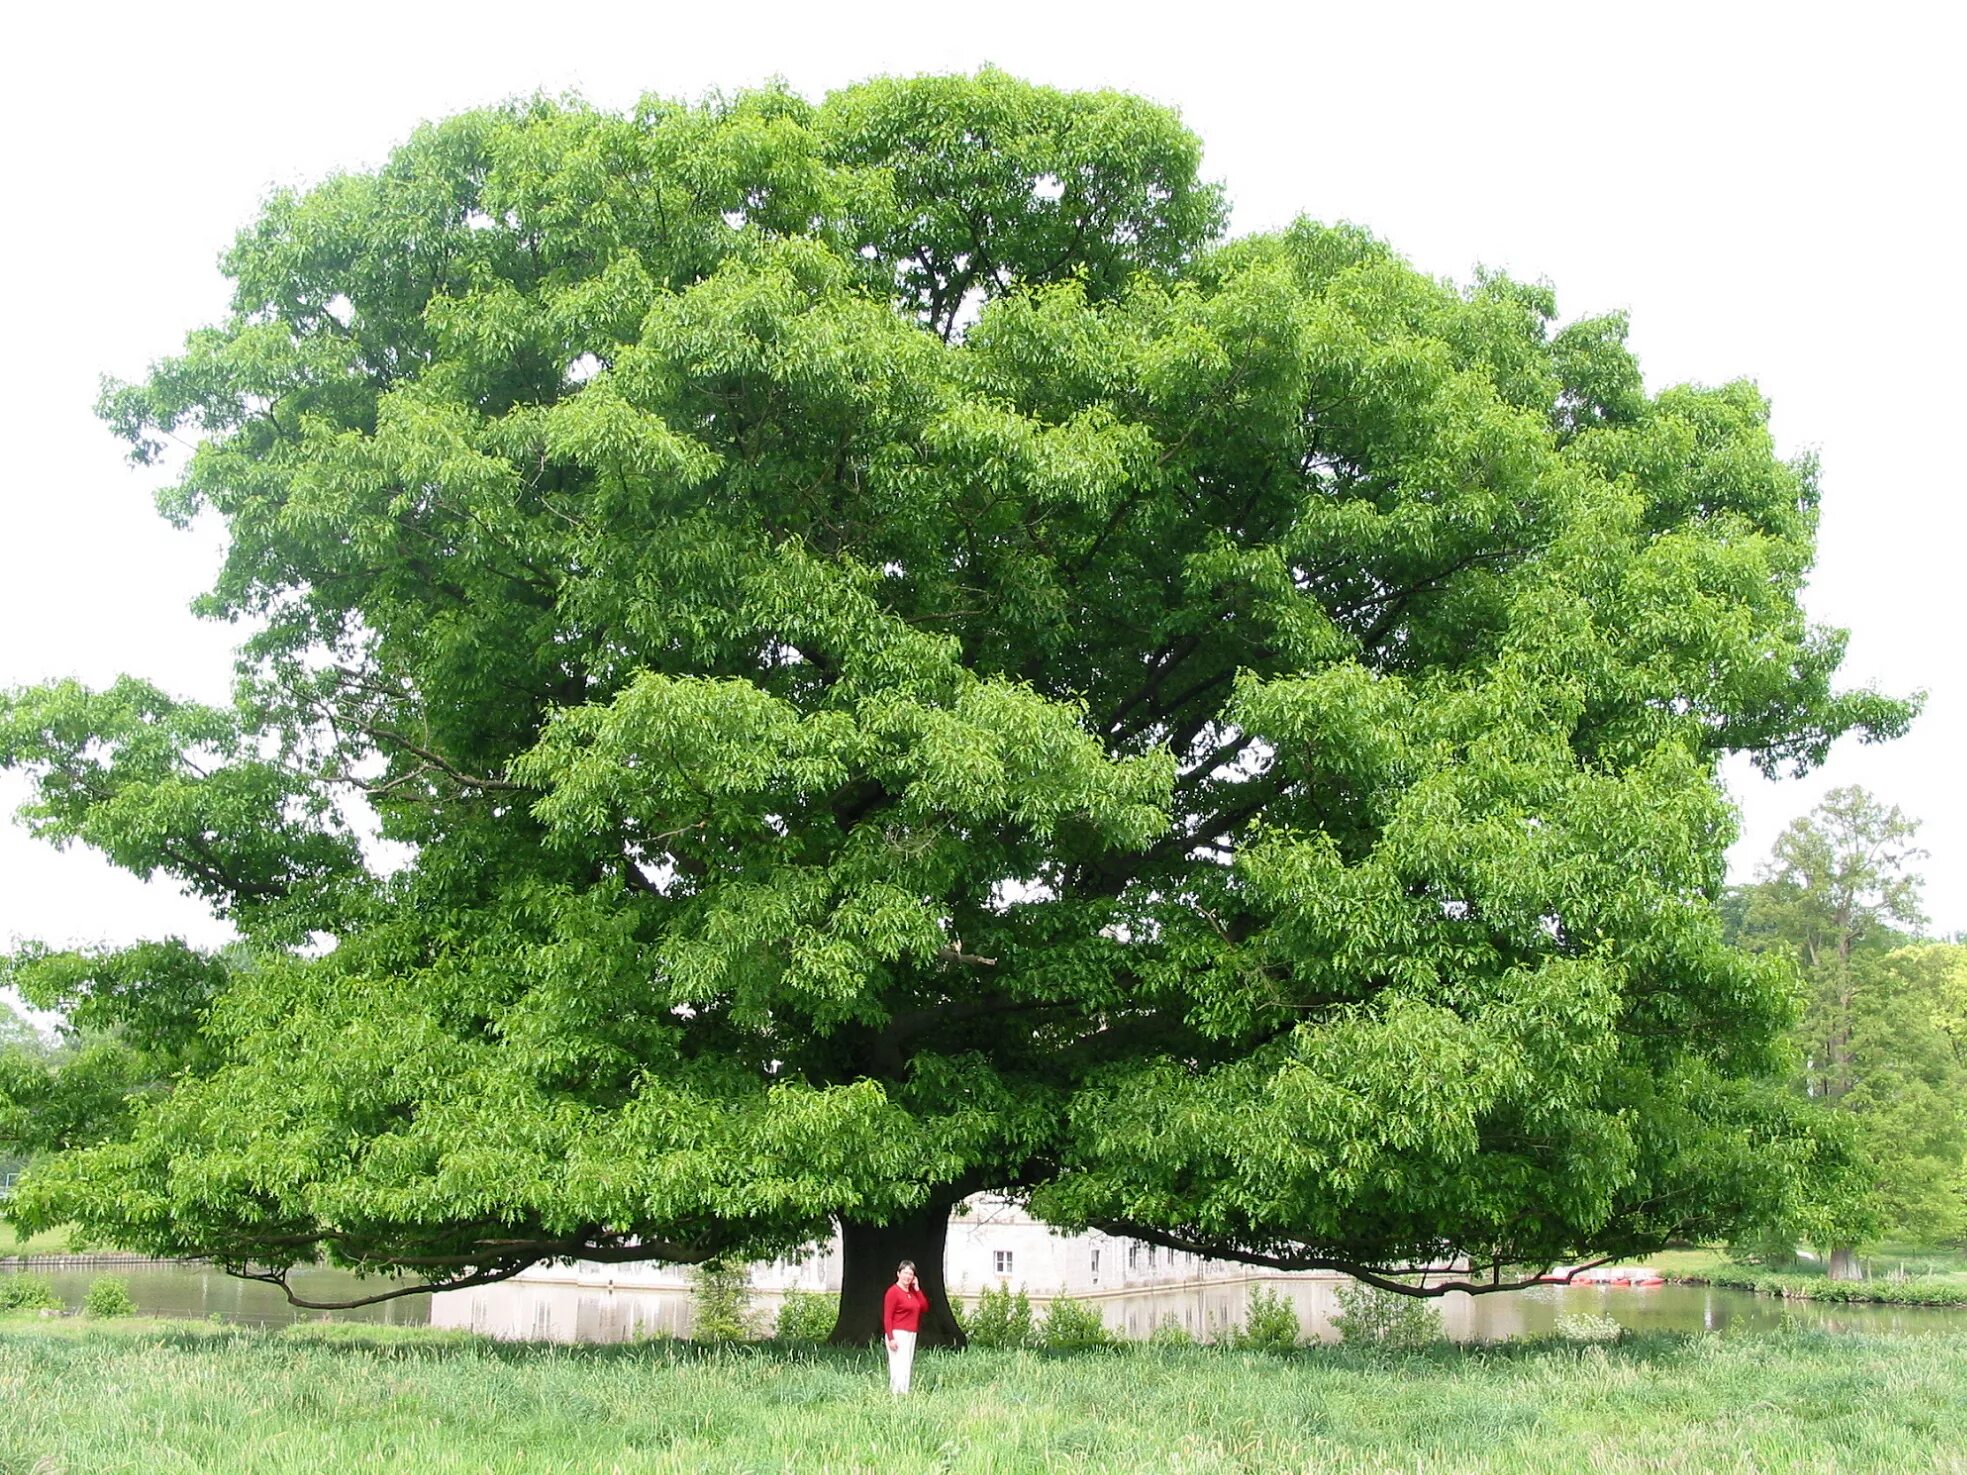 Червонное дерево. Quercus rubra (дуб красный) 'Aurea'. Картас Южный дерево. Дуб араксинский Quercus ARAXINA. Дуб черешчатый.